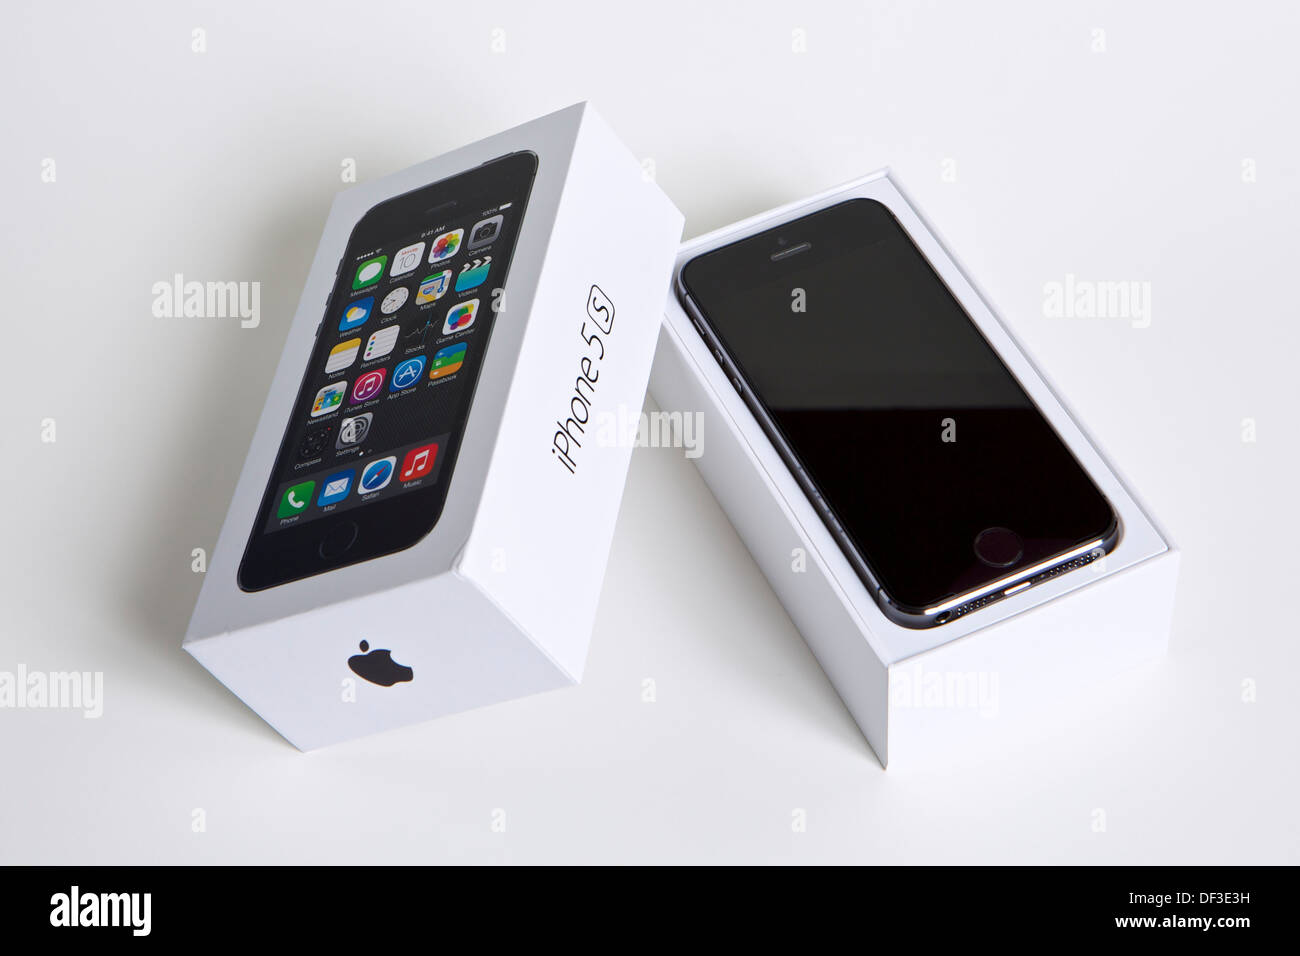 Apple iPhone 5S Stock Photo